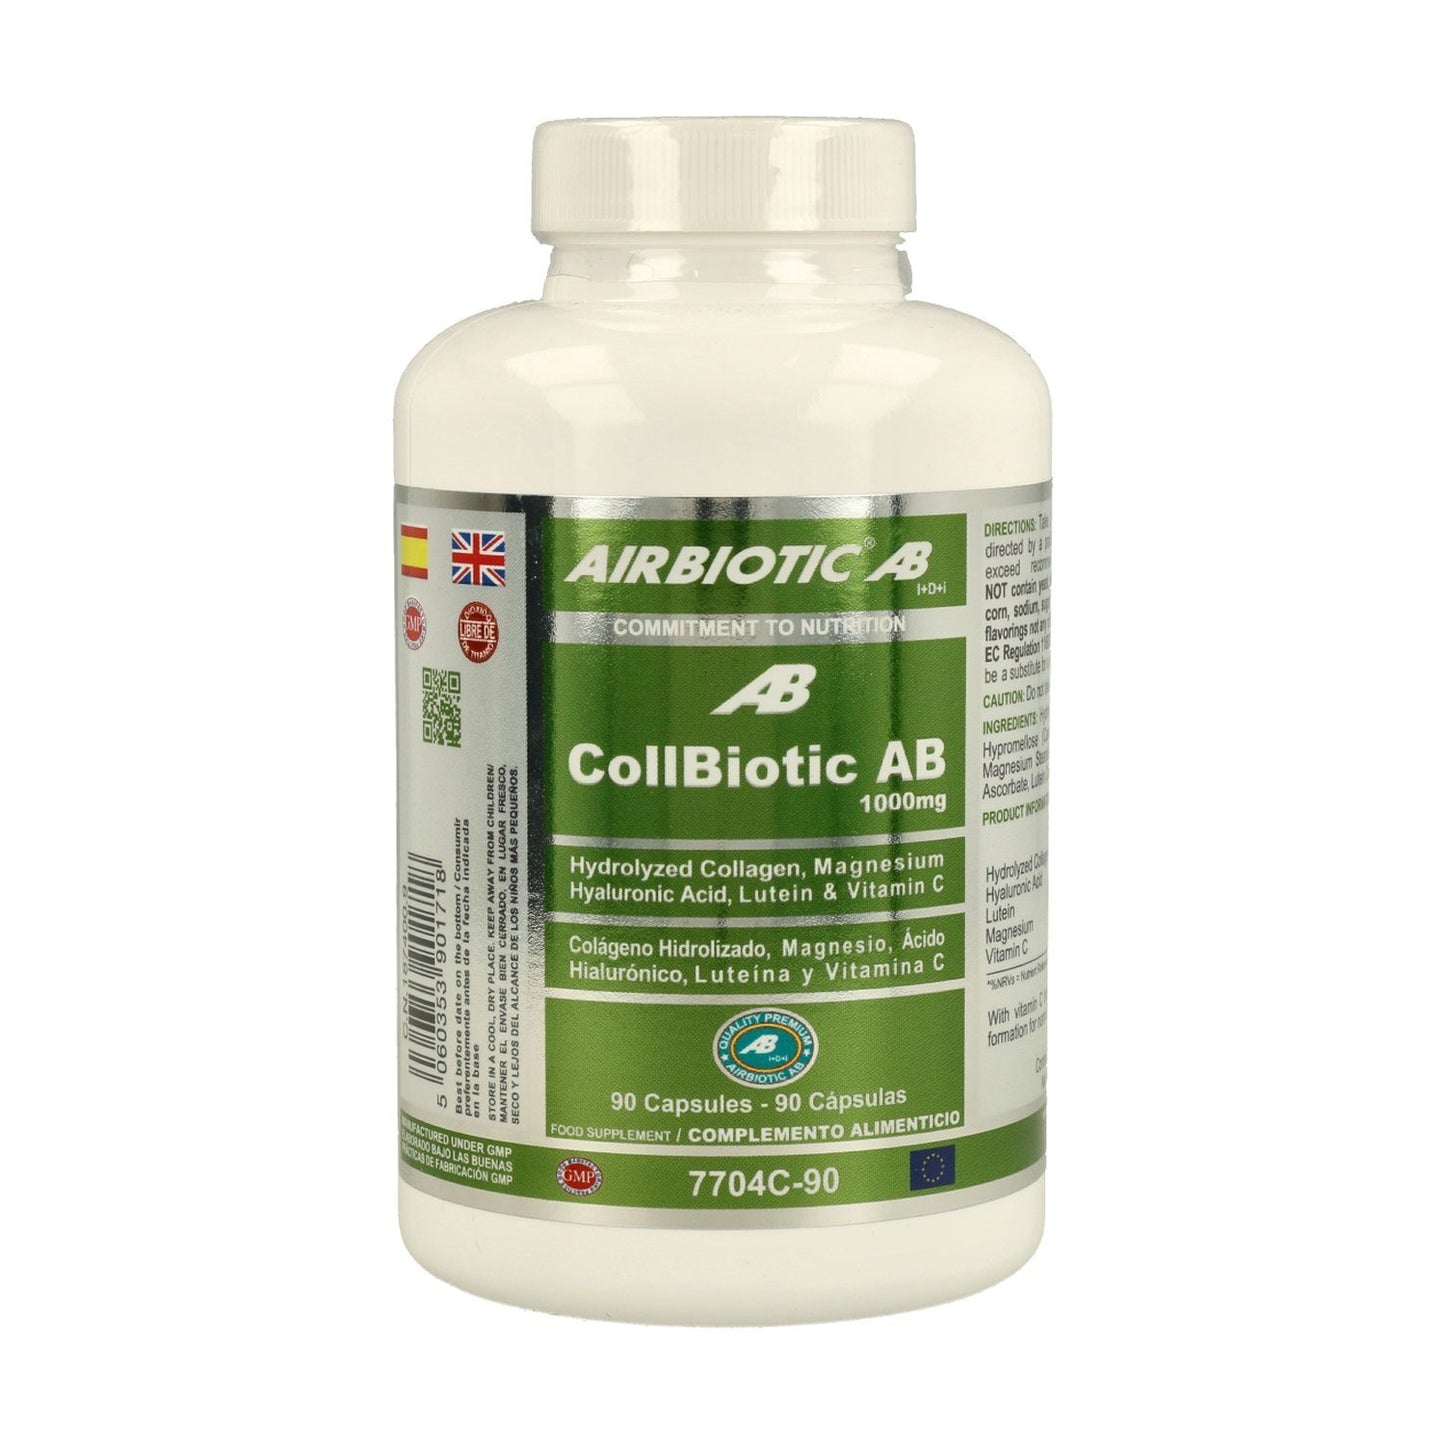 Collbiotic 1000 mg 90 Capsulas | Airbiotic AB - Dietetica Ferrer